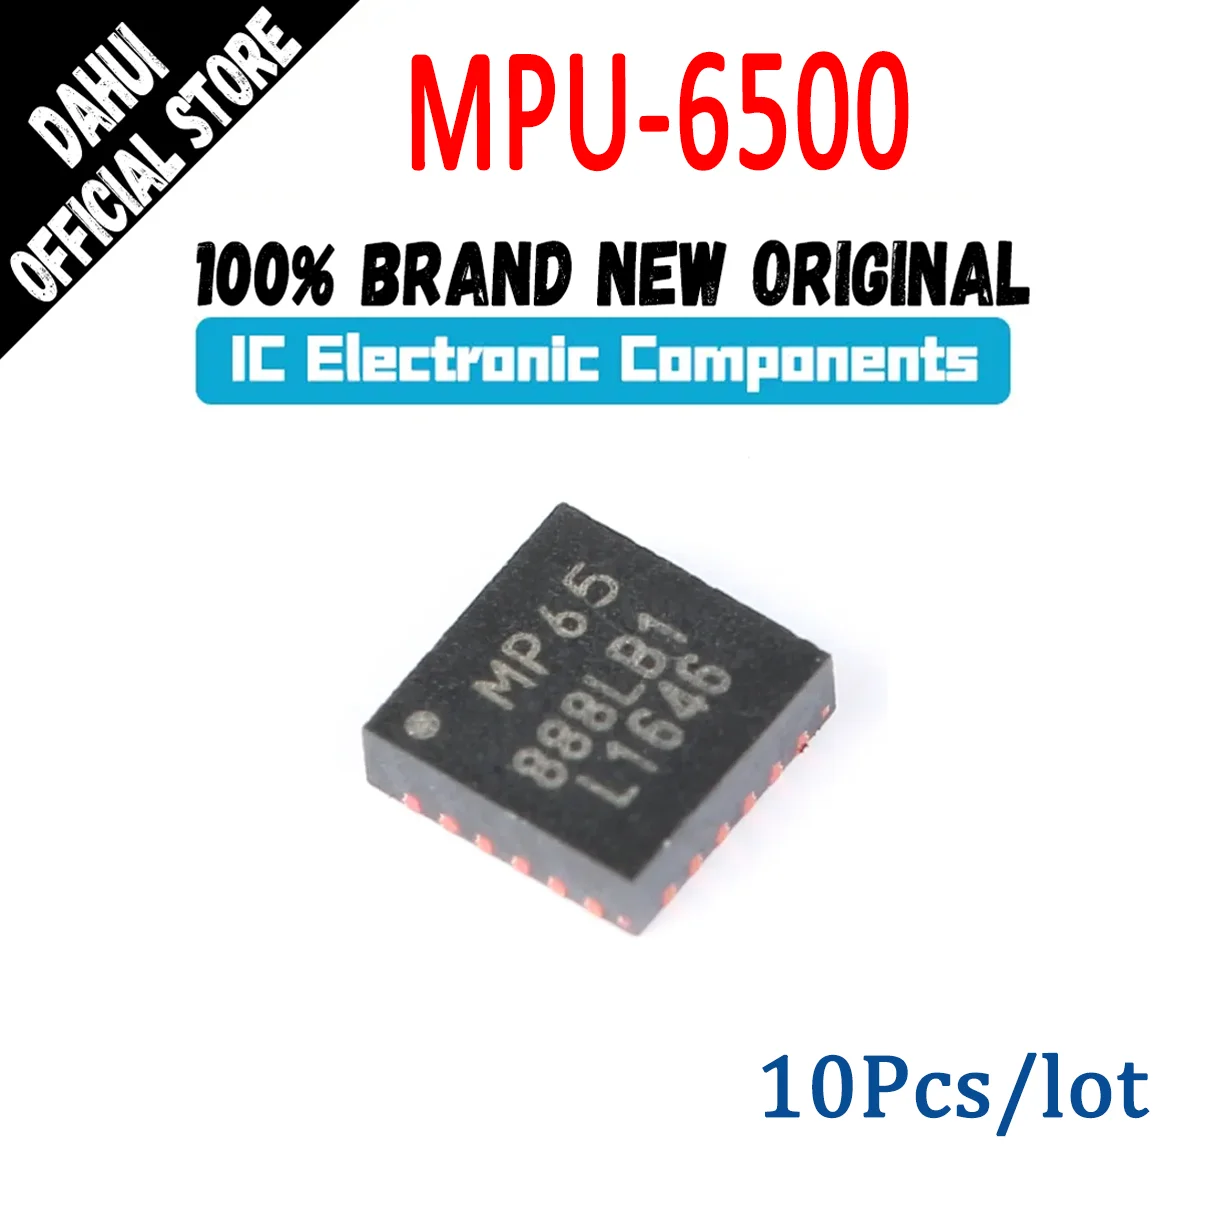 

MPU-6500 MPU 6500 MP65 ICchip QFN-24 In Stock 100% New Originl